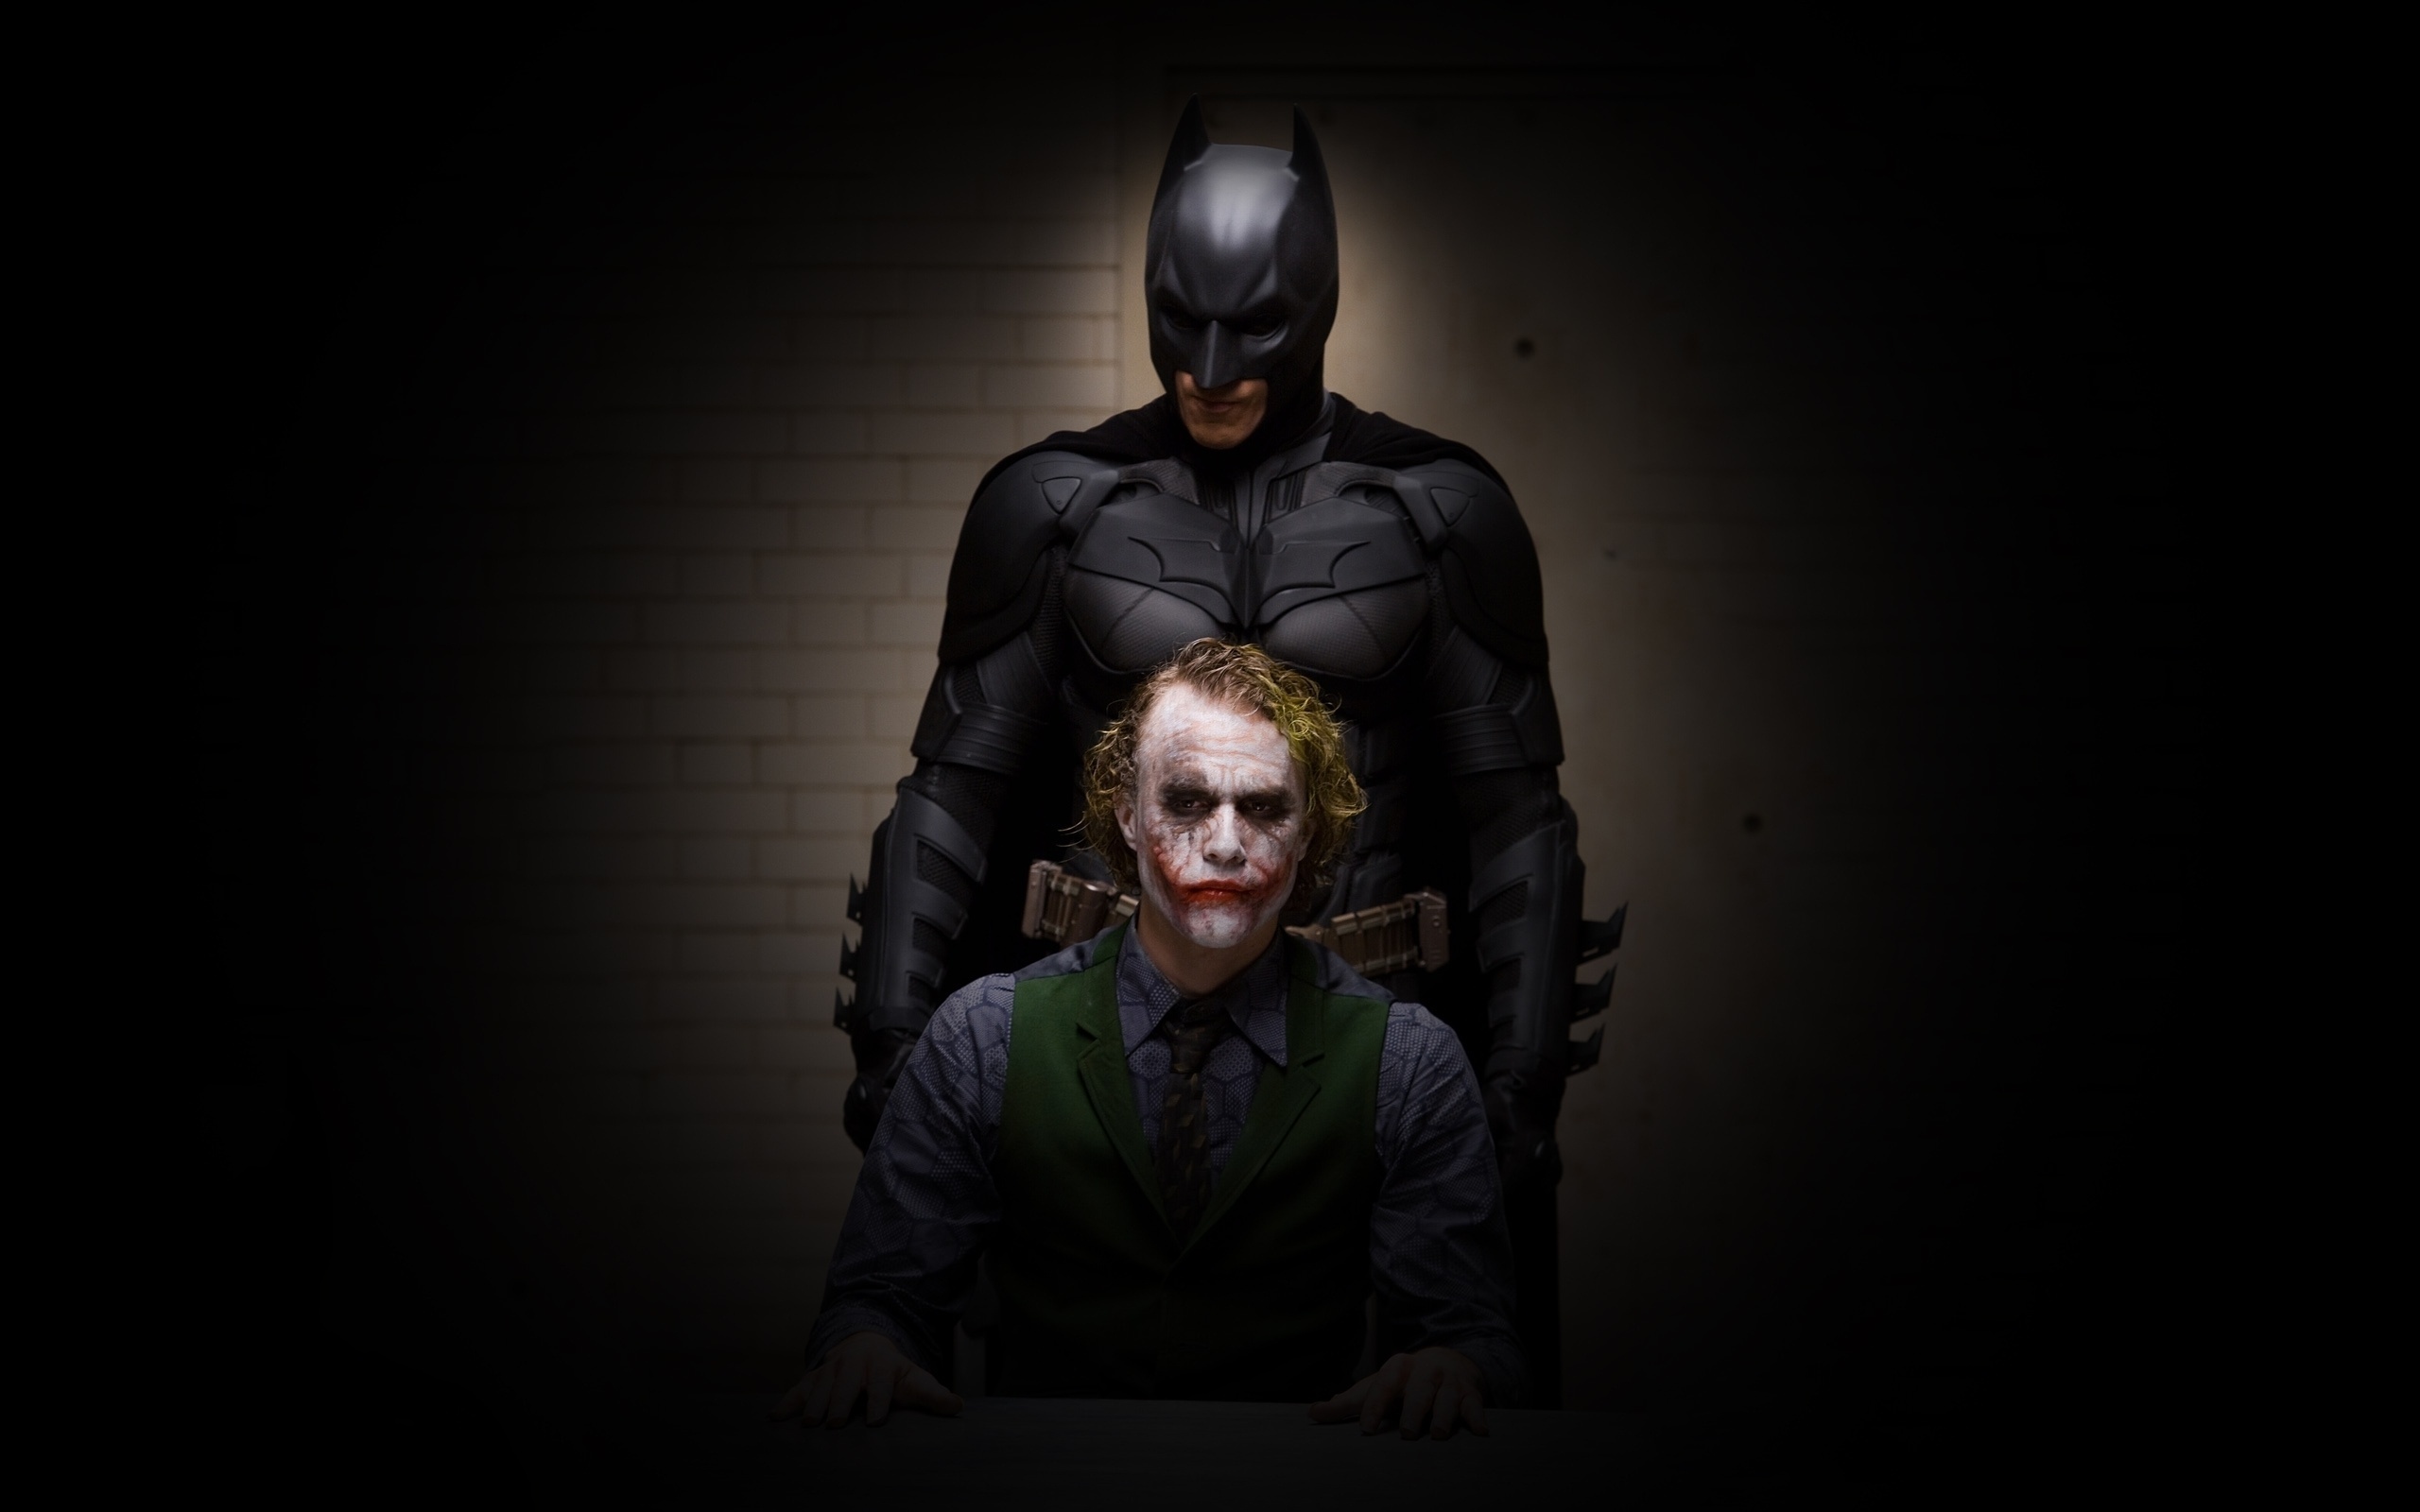 Wallpaper Batman Joker Dark The Knight Image At Clker